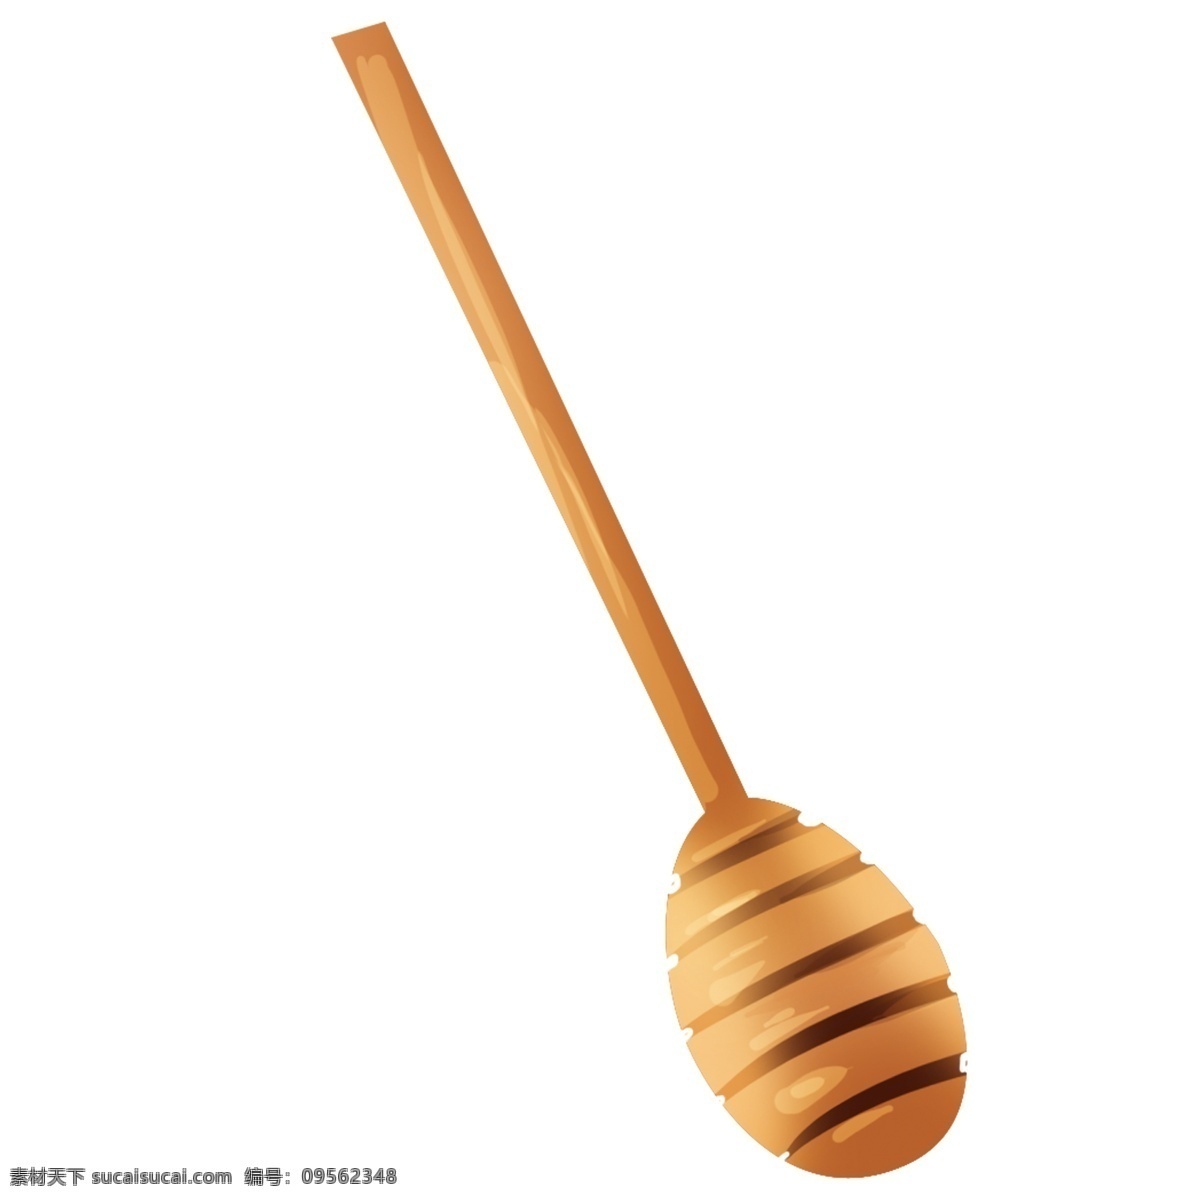 蜂蜜 棍子 装饰 元素 木棒 蜂蜜棍 装饰元素 简约 木制品 木头 工具